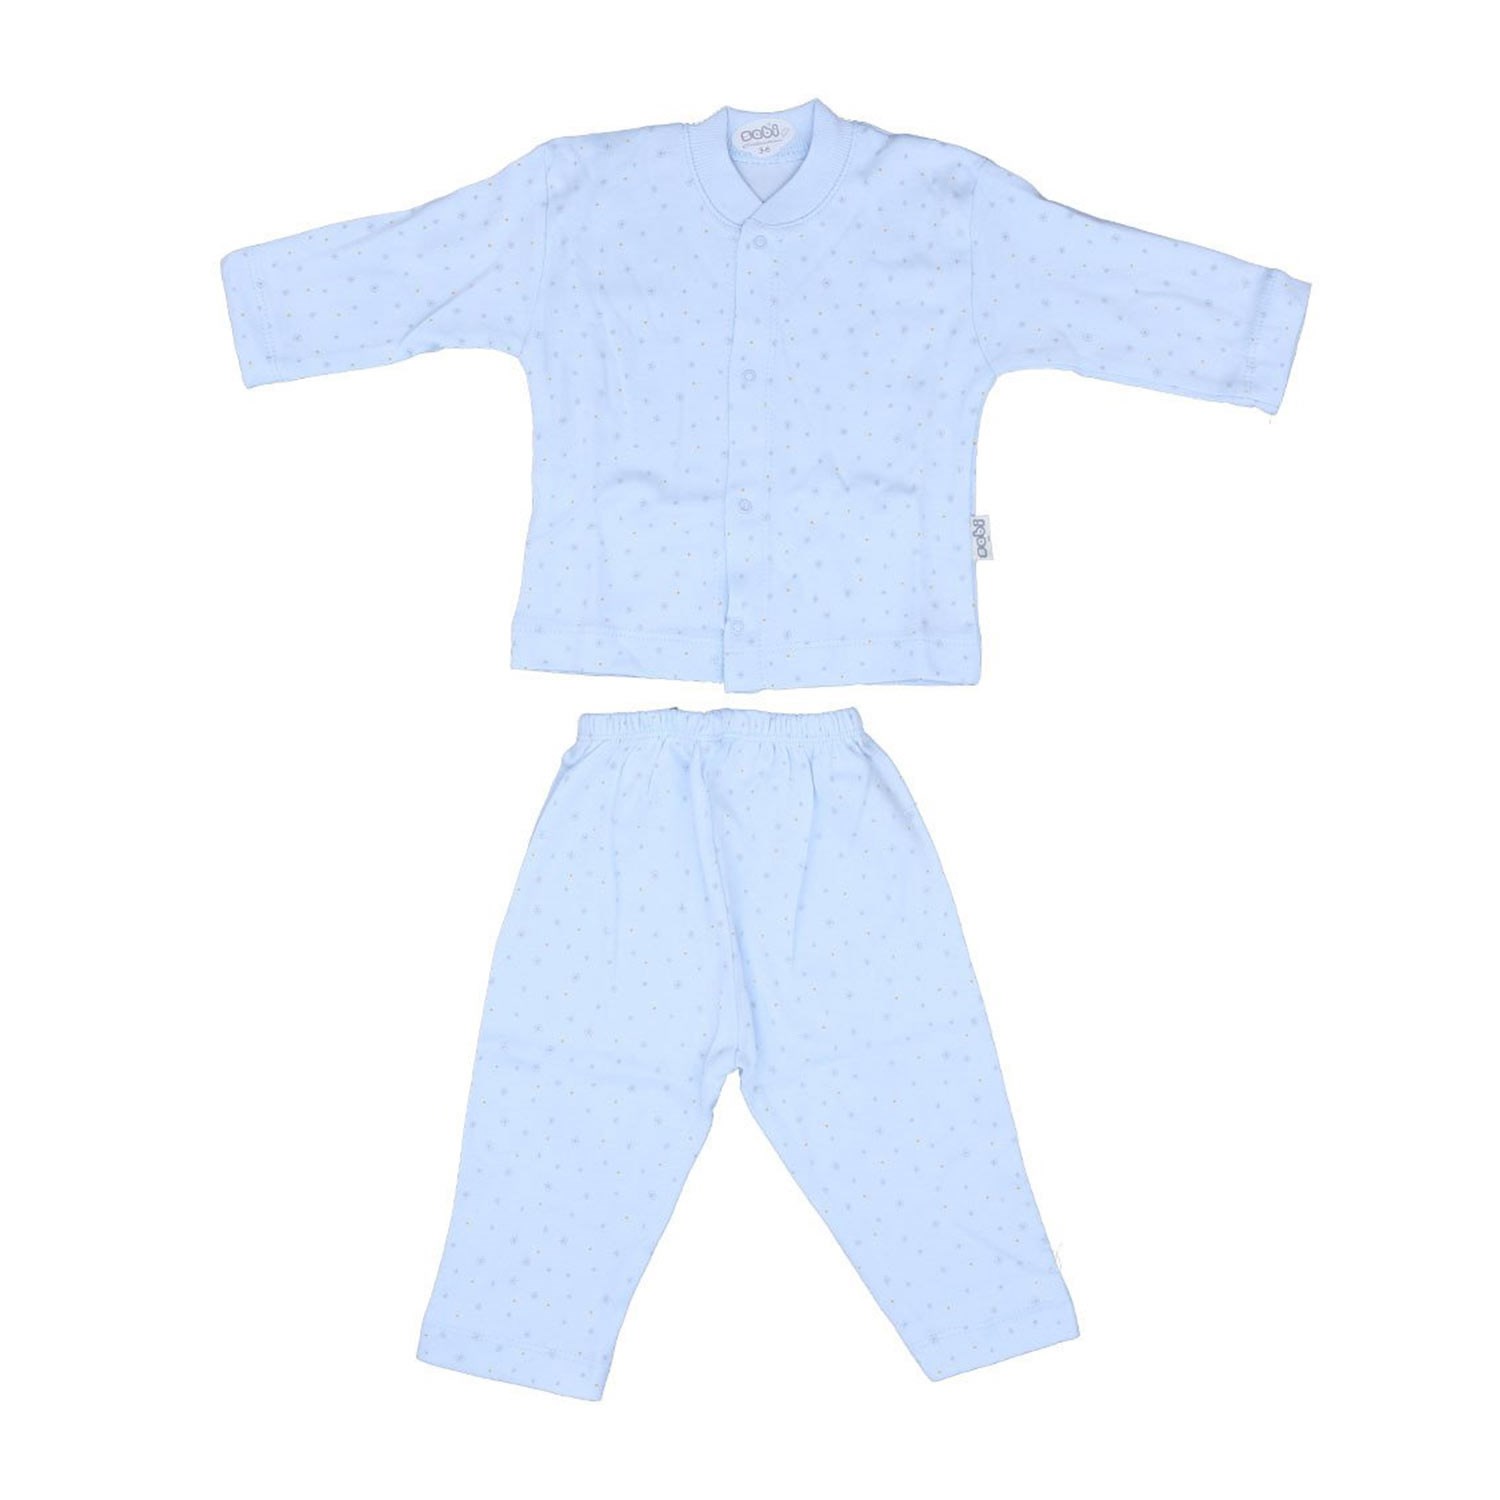 Sebi Kartaneli Bebek Pijama Takımı 2318 Mavi